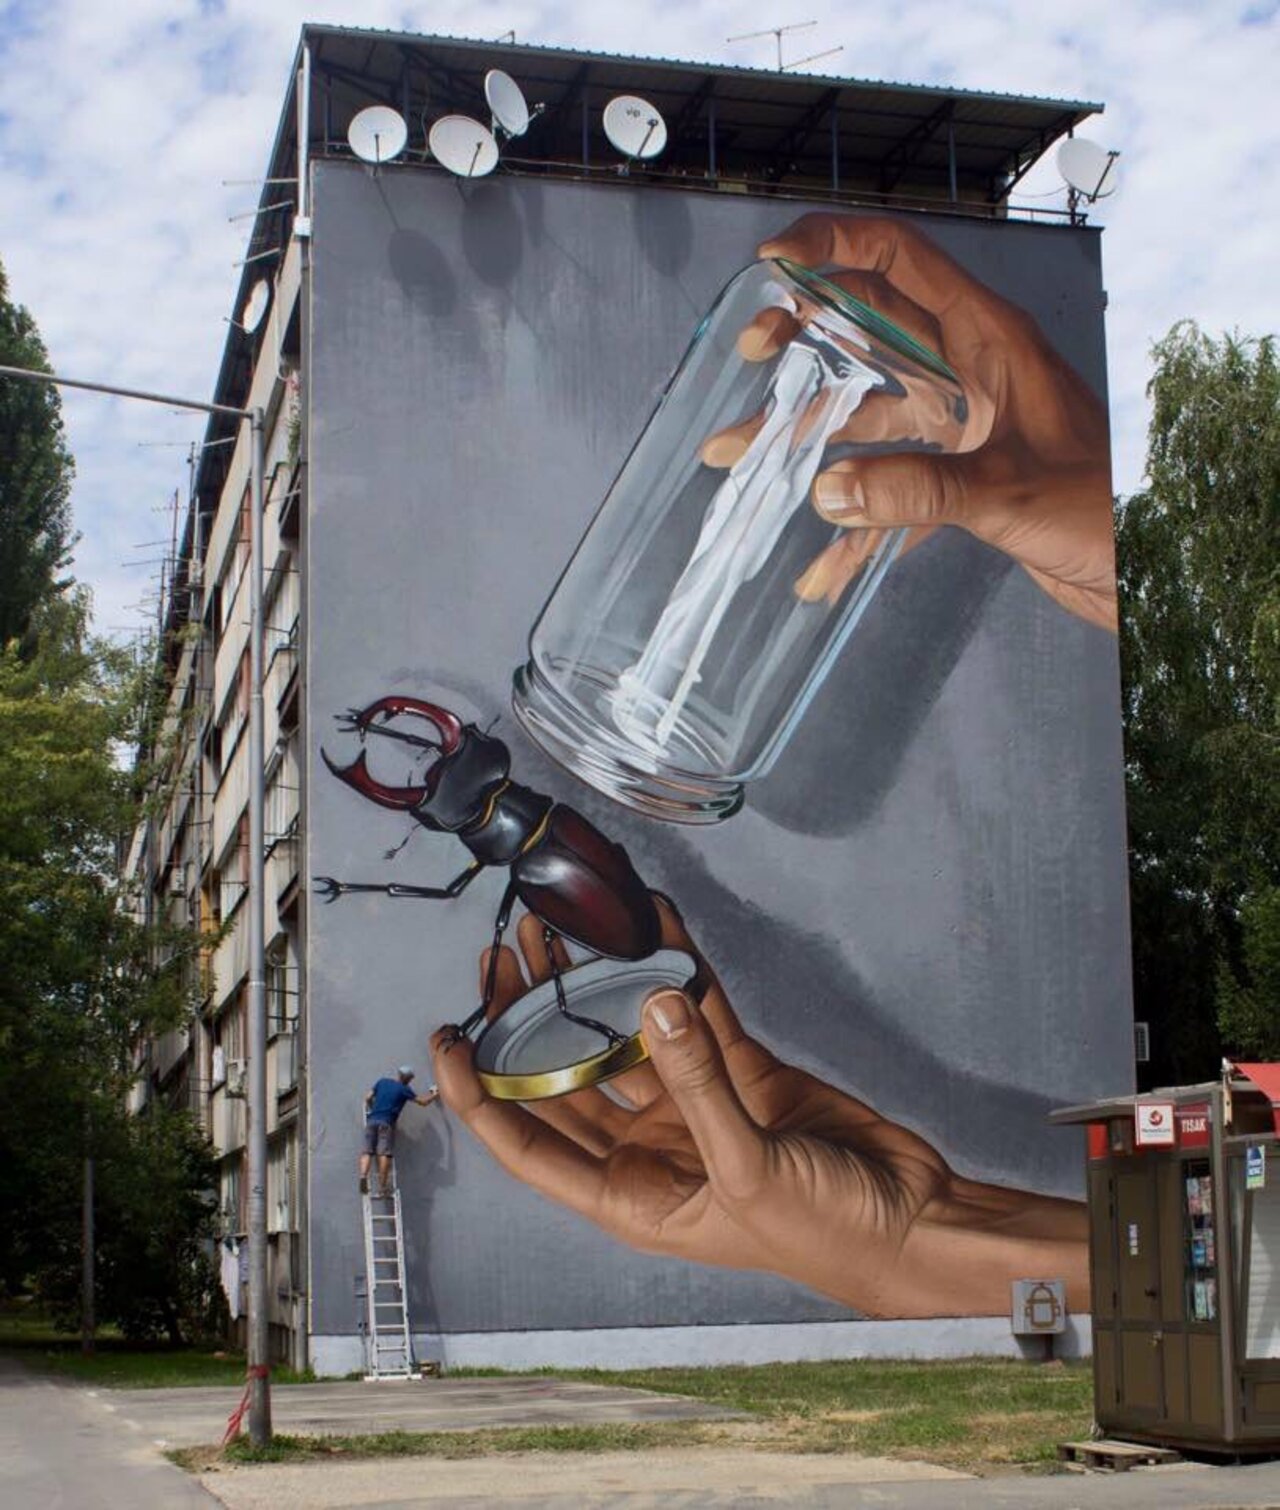 #mural by Lonac in #Sisak #Croatia #streetart #art #graffiti #urbanart https://t.co/0d3Owfmfeb